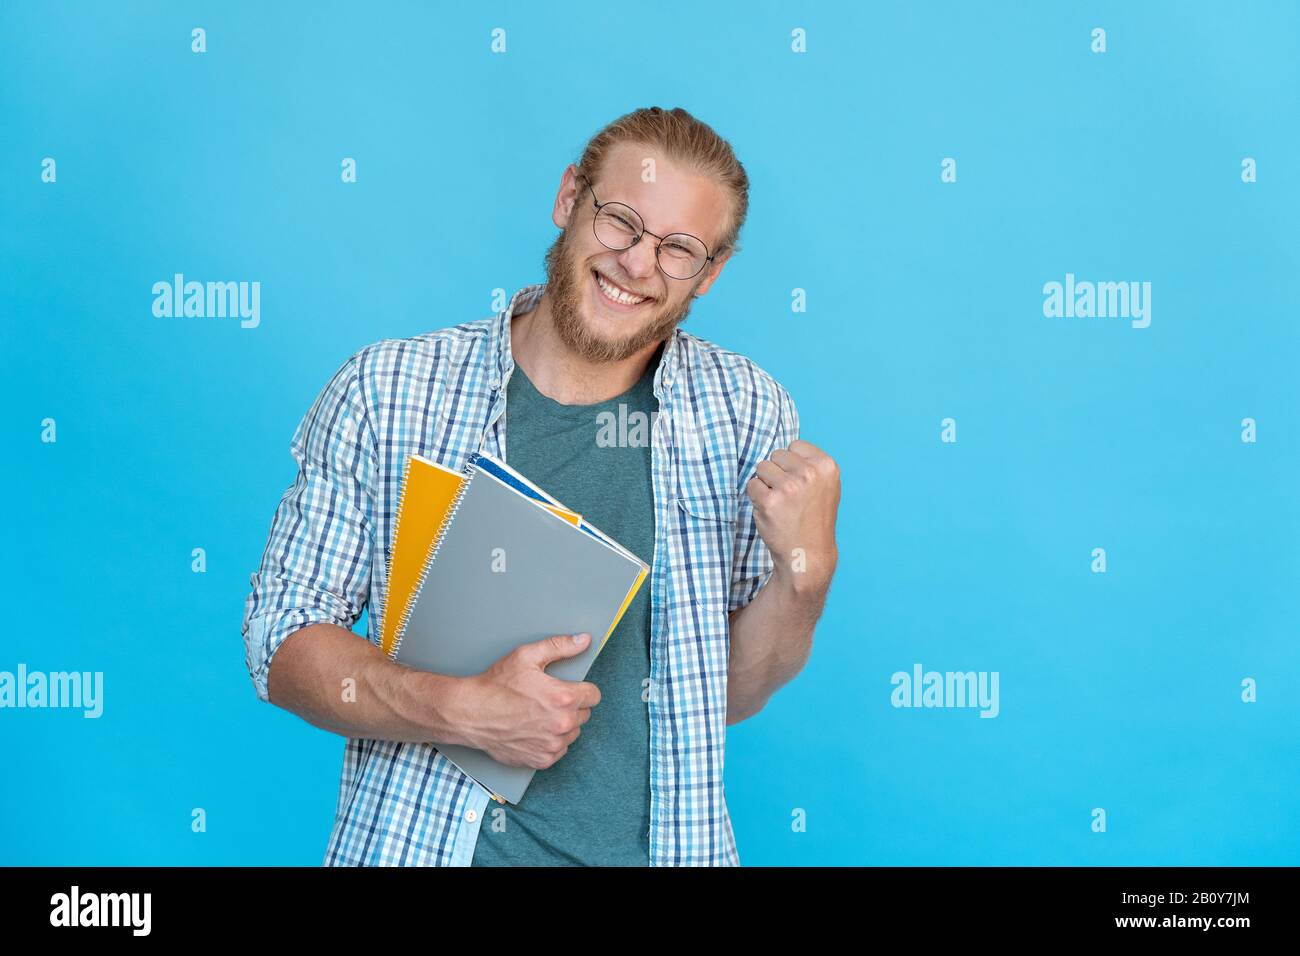 Un étudiant heureux et heureux barbu dans des lunettes tient des copybooks oui geste de victoire Banque D'Images